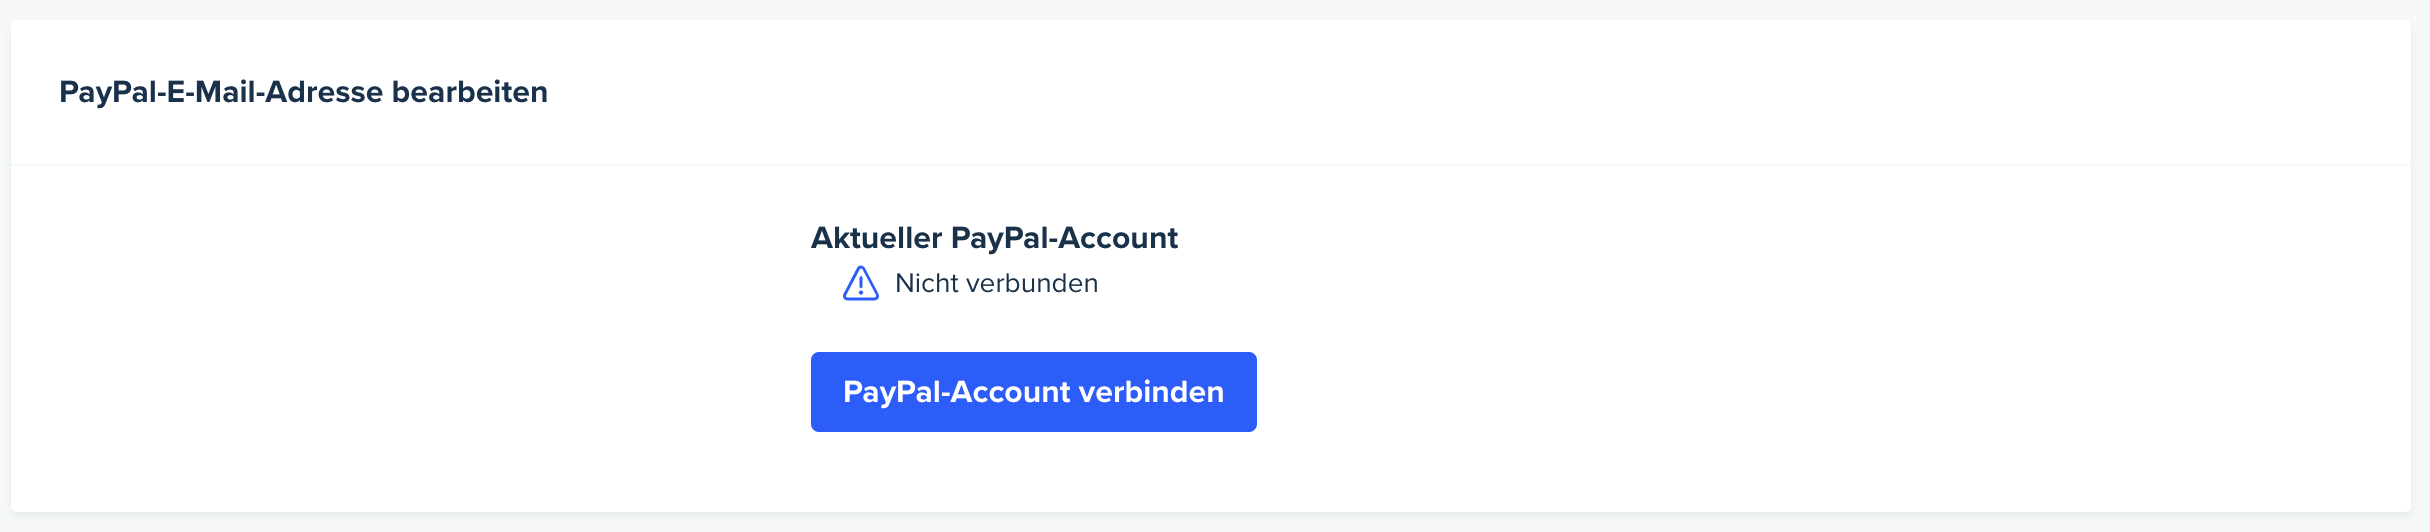 Die Seite mit den Kontoeinstellungen. Die Seite wird nach unten zum Abschnitt PayPal-E-Mail bearbeiten gescrollt. Ein Abzeichen zeigt an, dass das PayPal-Konto des Testteilnehmers nicht verbunden ist. Auf der Seite ist eine Schaltfläche zum Verbinden eines PayPal-Kontos verfügbar.